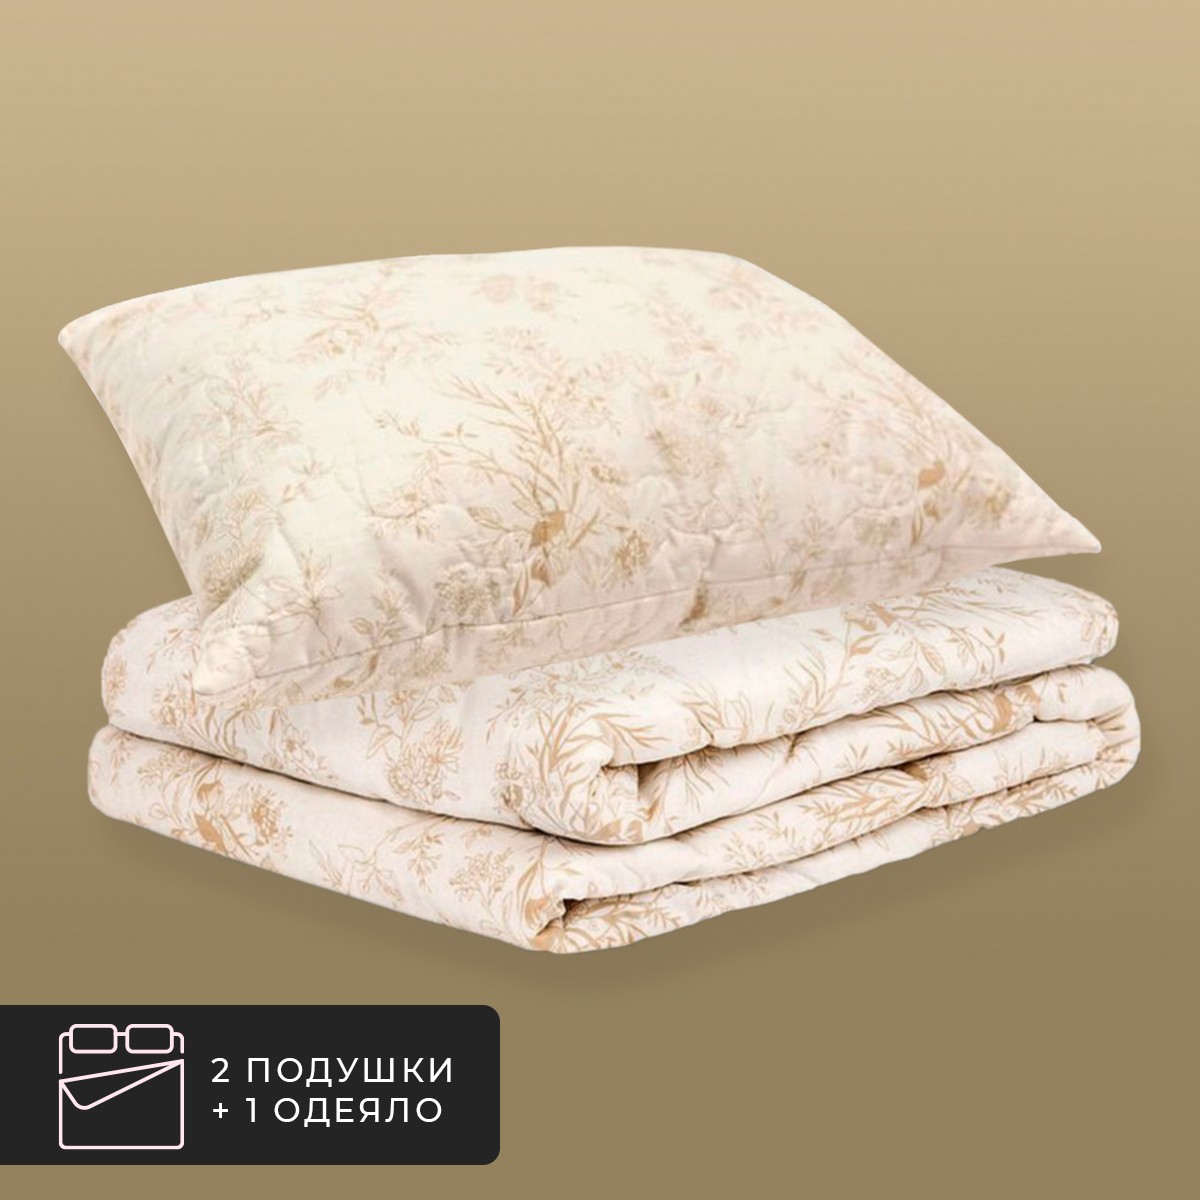 Набор 1 одеяло + 2 подушки Хлопок-натурэль, хлопковое волокно в хлопковом тике (140х200, 50х70-2 шт)